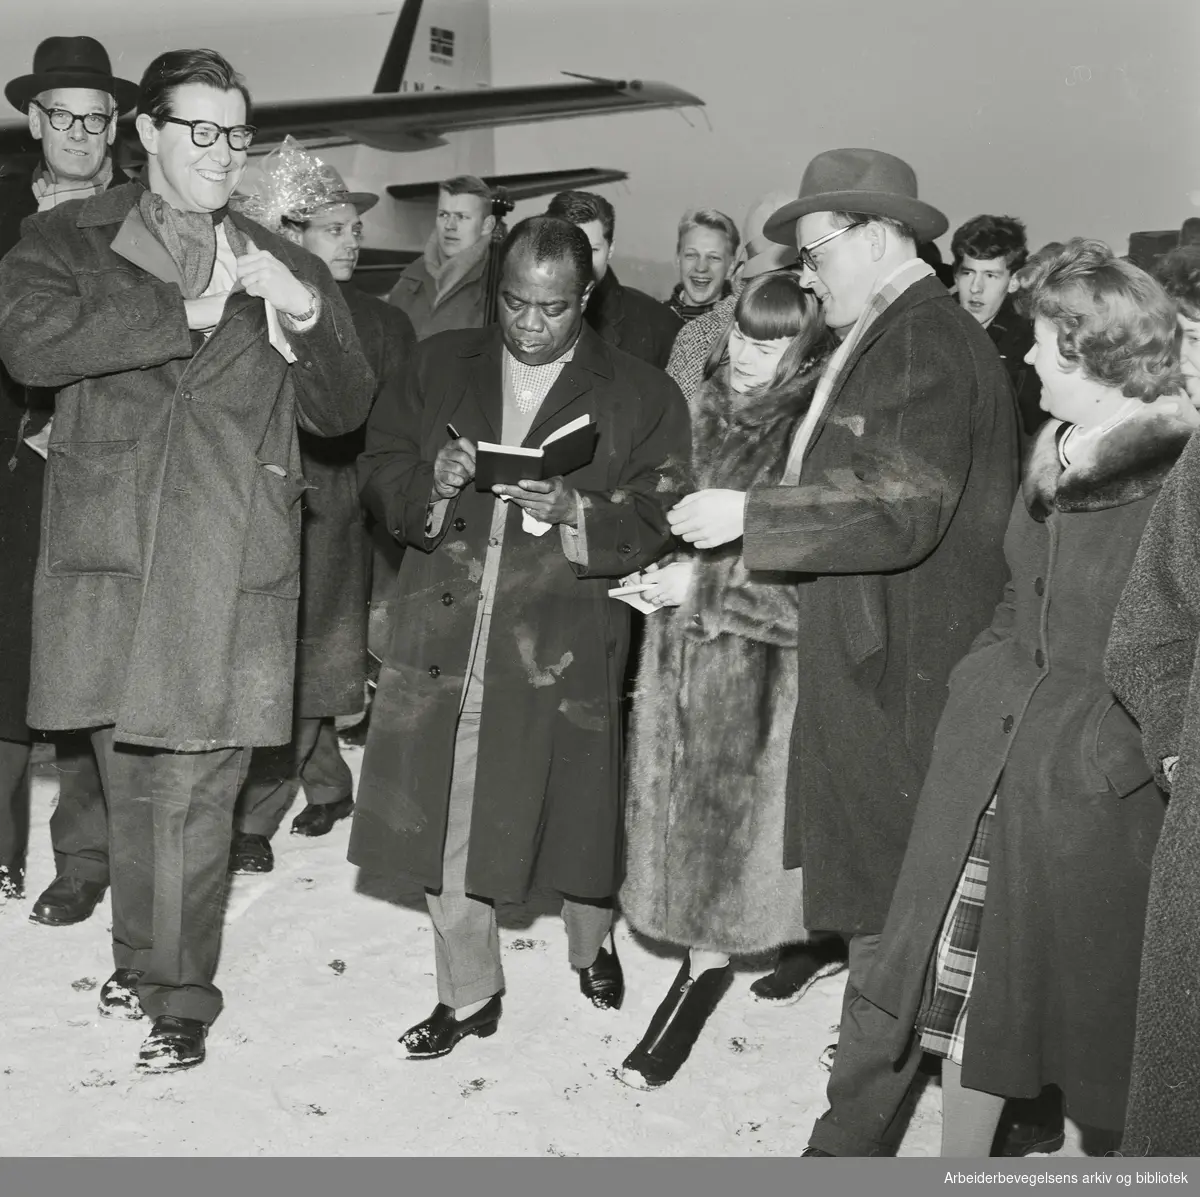 Louis Armstrong ankommer Oslo via Fornebu flyplass 2 februar 1959. Ønskes velkommen og intervuet av blant andre Haagen Ringnes (th) og Tor von Krogh. Ytterst til venstre: impresario Per Gottschalk